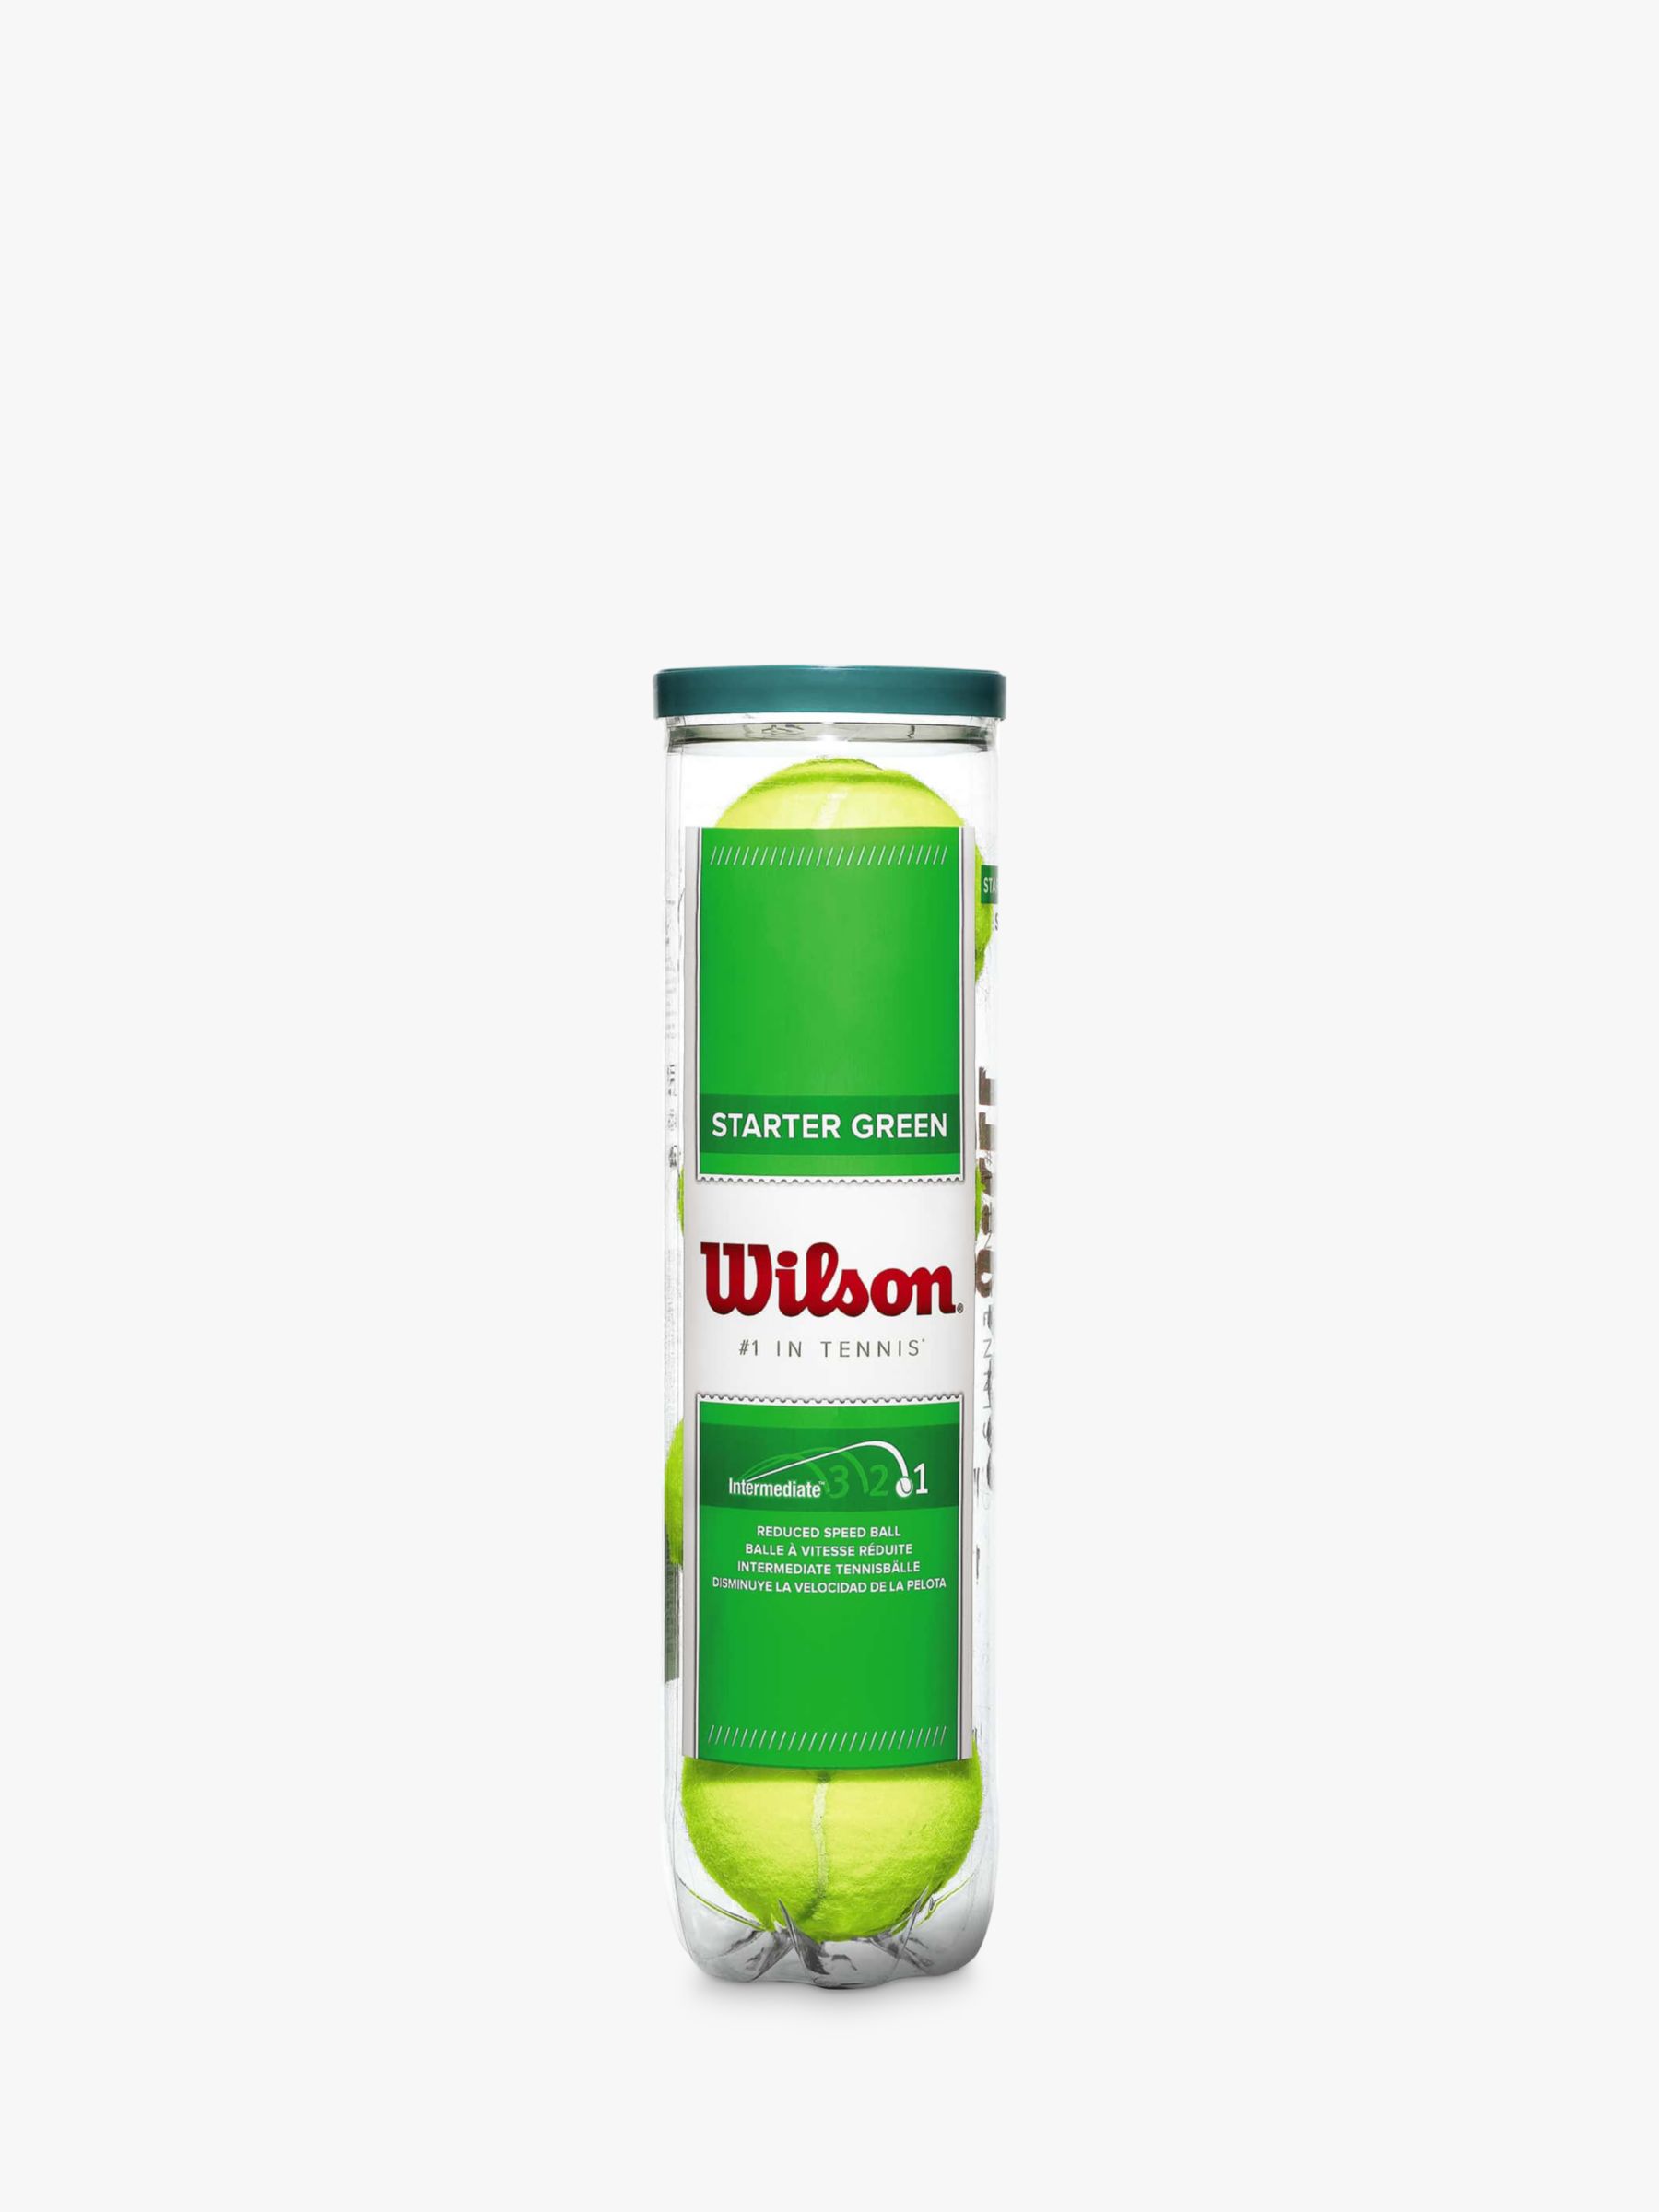 Wilson Starter Play Tennis Ball, Green, Pack of